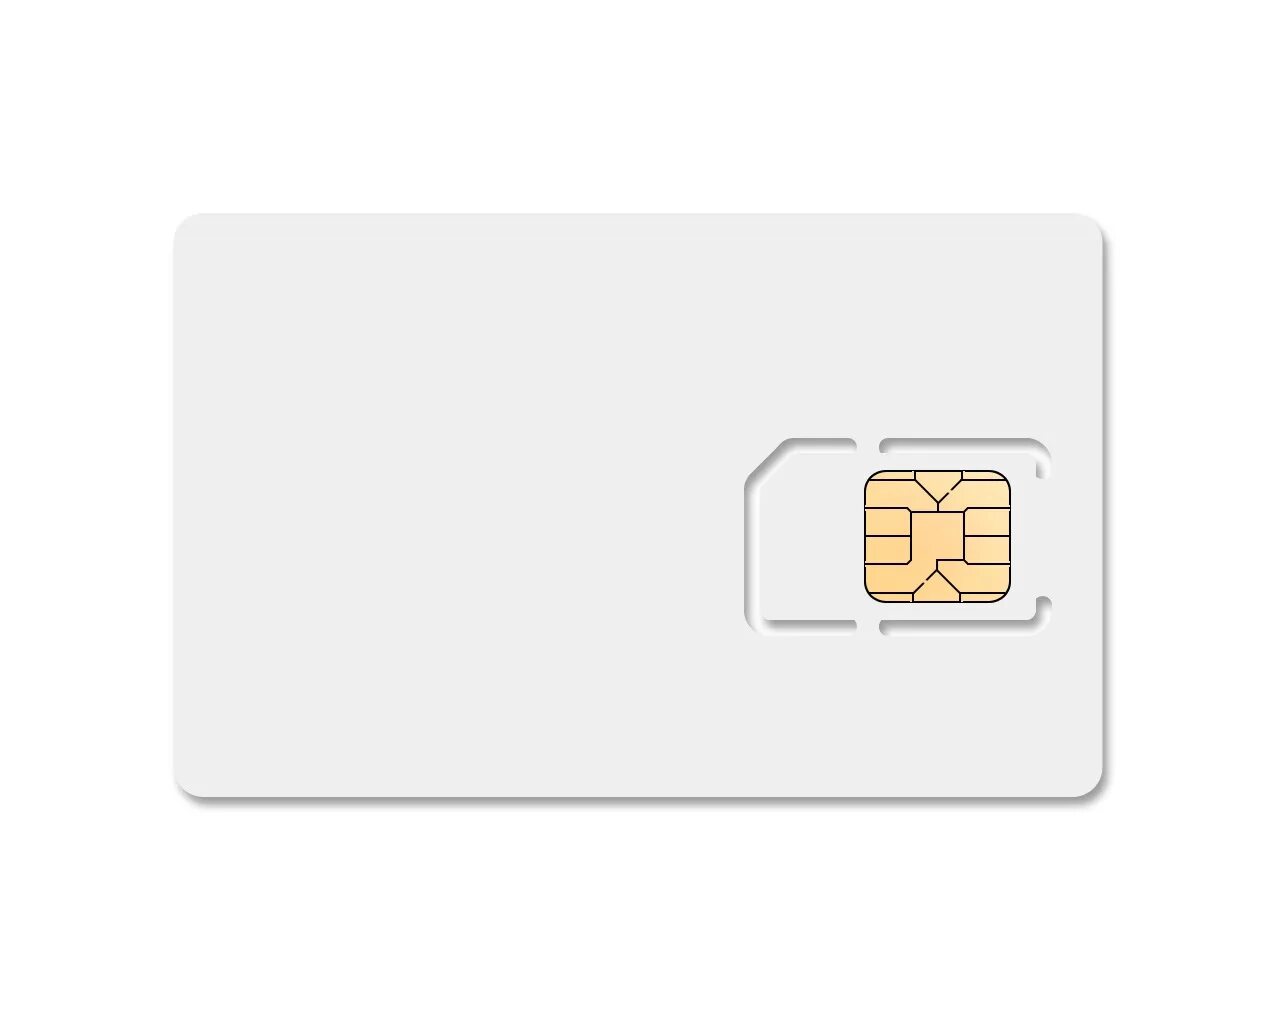 М2м термо SIM-карта. Чип сим карты. Номер SIM карты. Белая сим карта. Номер пустой карты